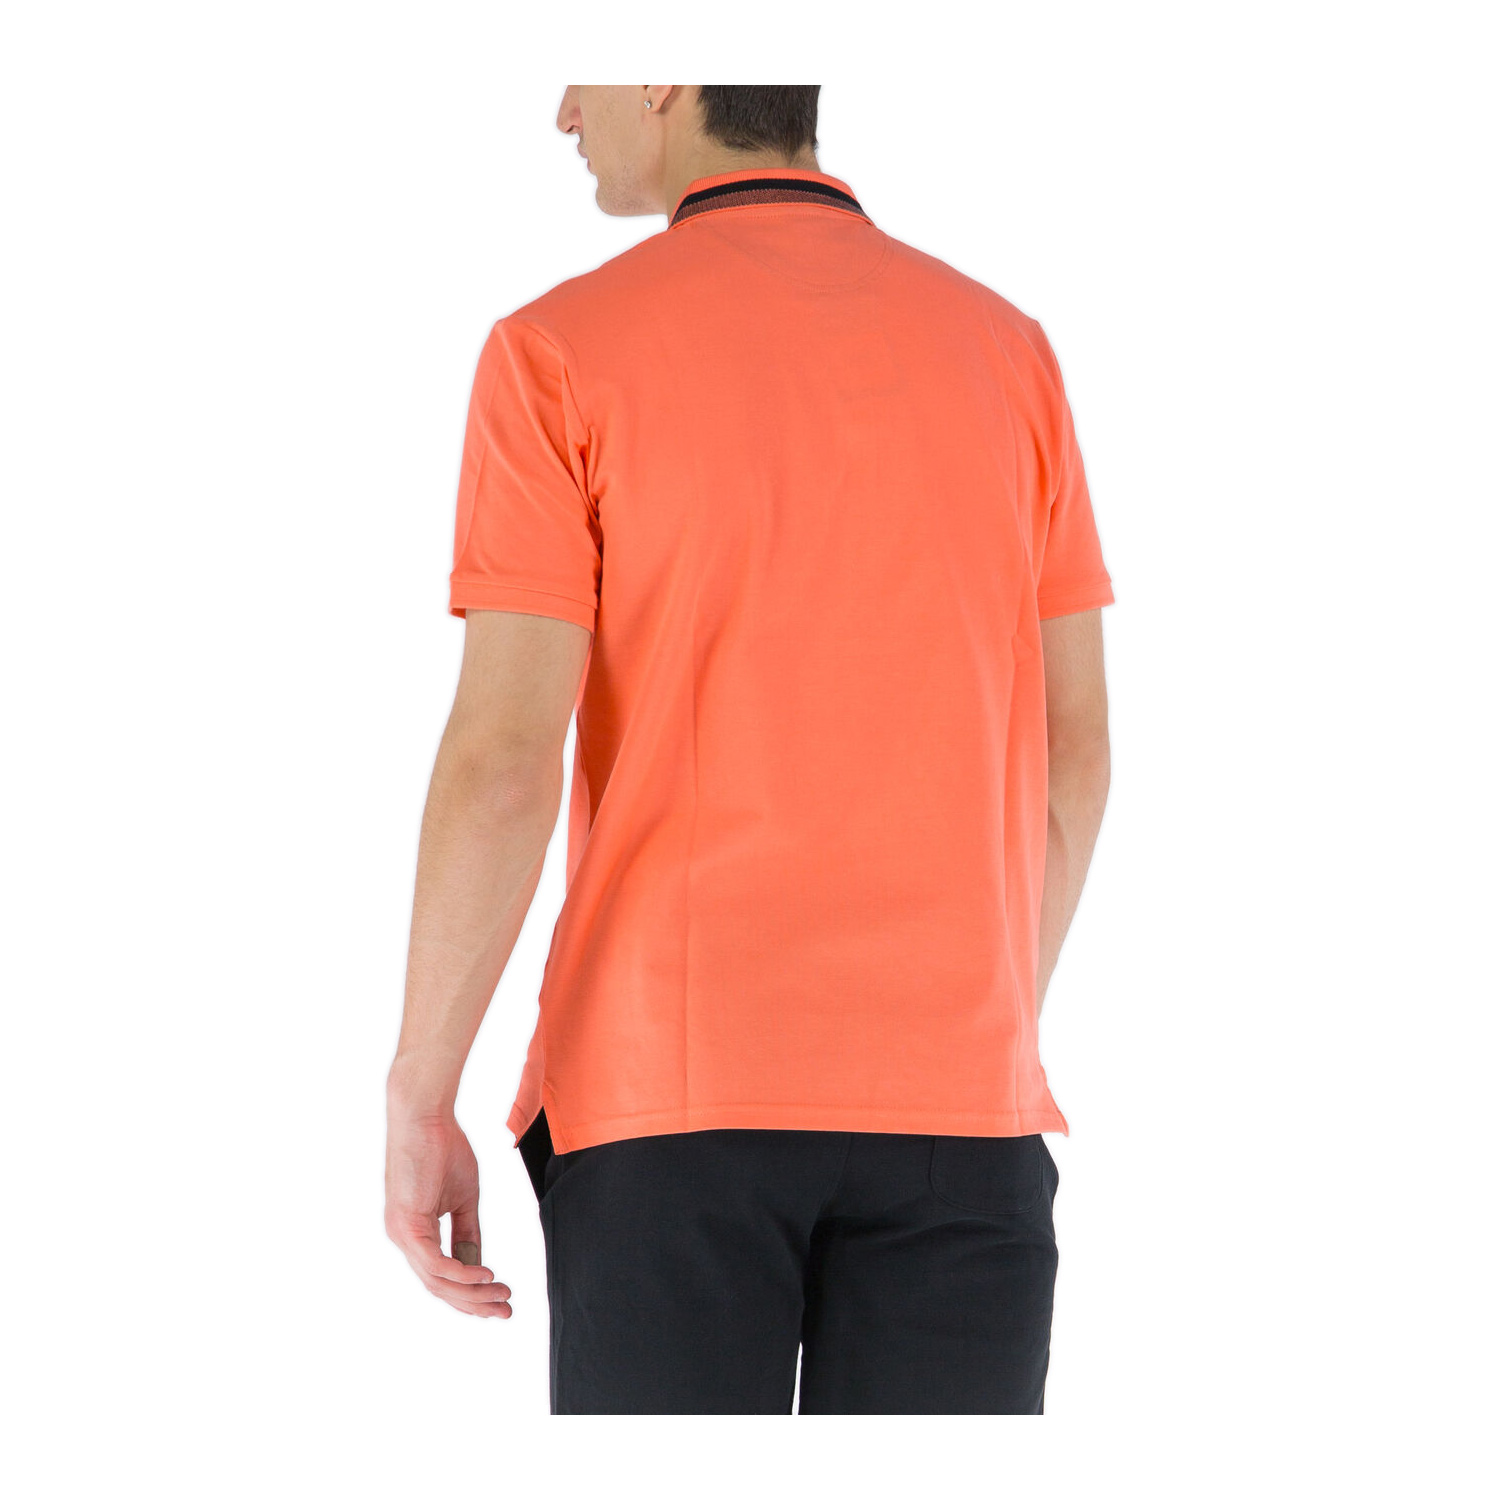 Champion Poloshirt mit Streifendetails am Kragen orange (ABVERKAUF)